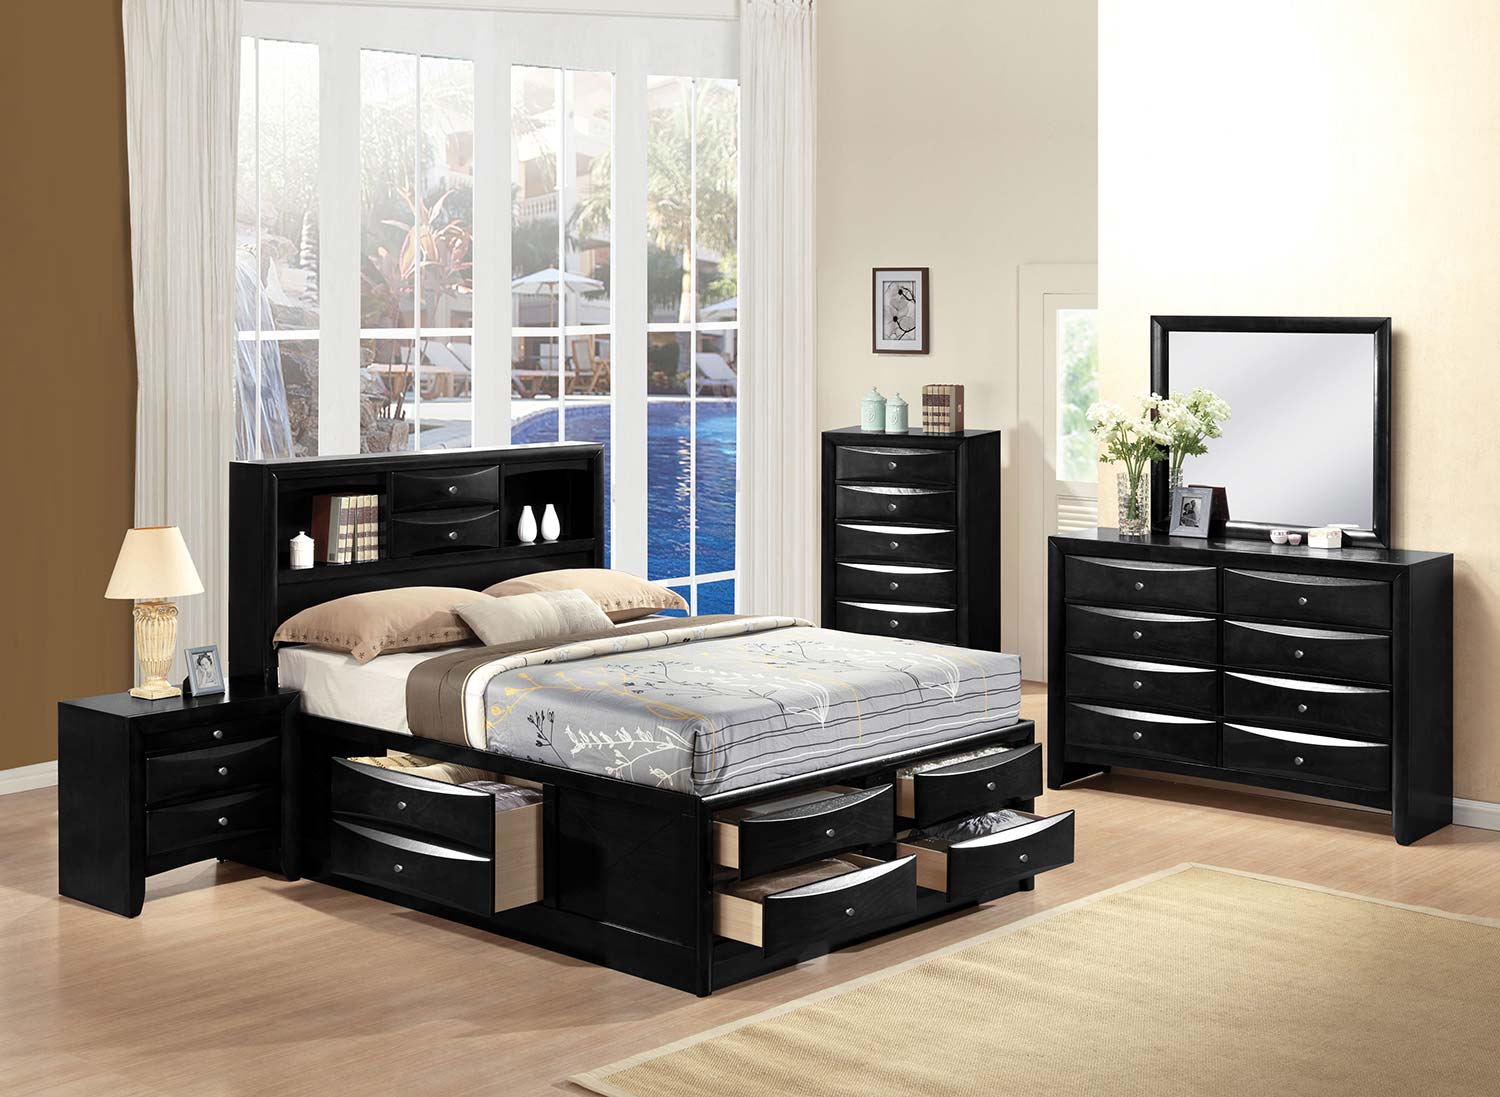 Acme Ireland Bedroom Set with Storage - Black